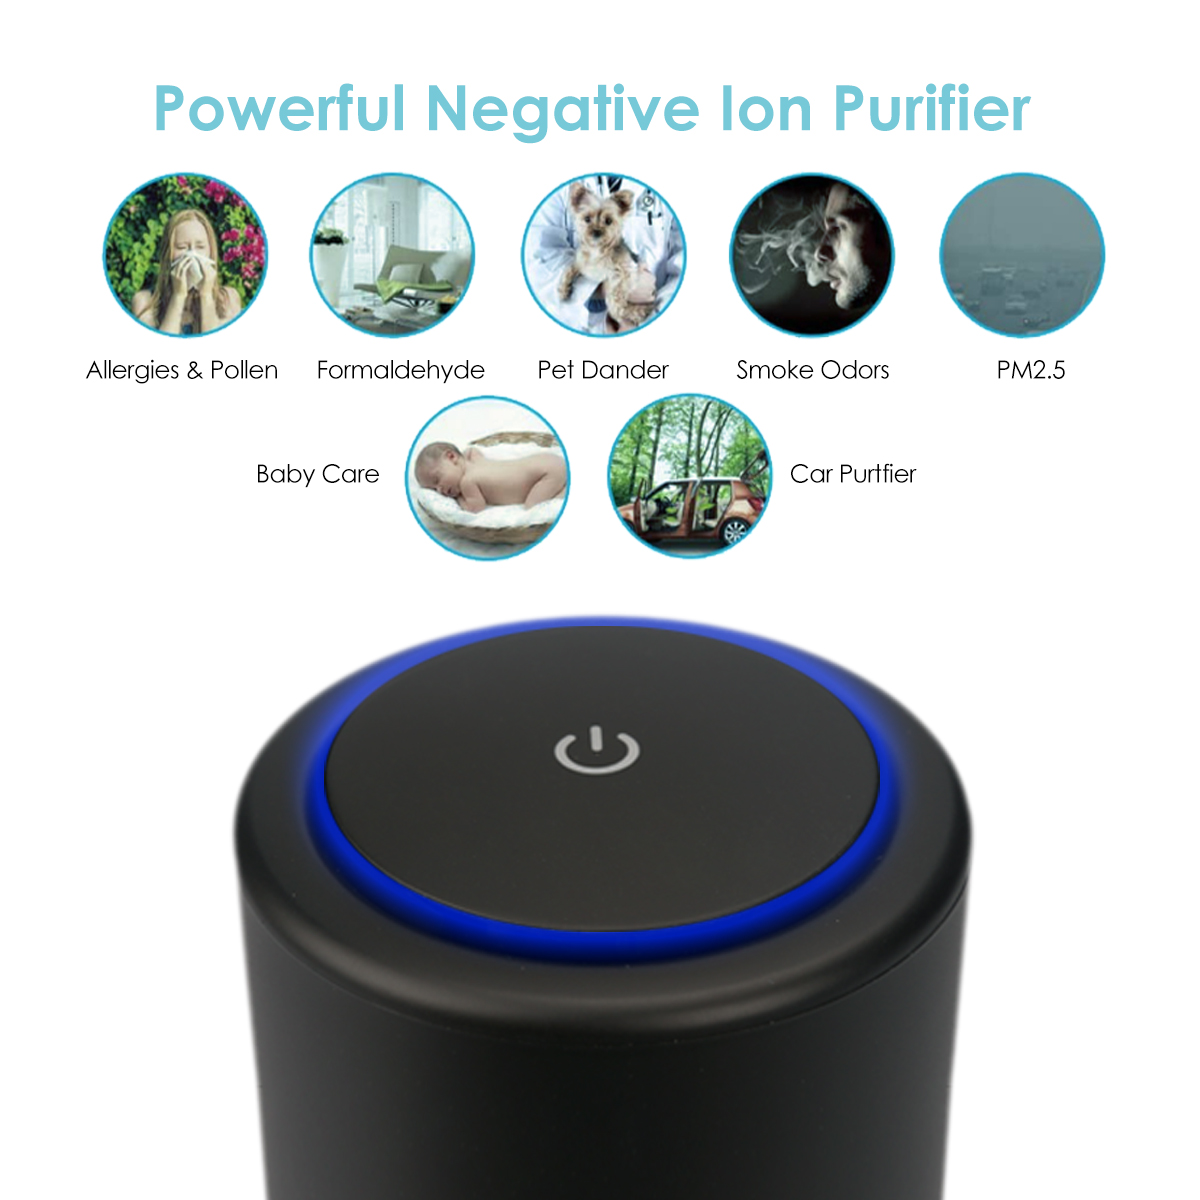 Portable air ionizer purifier for home allergy h13 hepa air purifier clean air